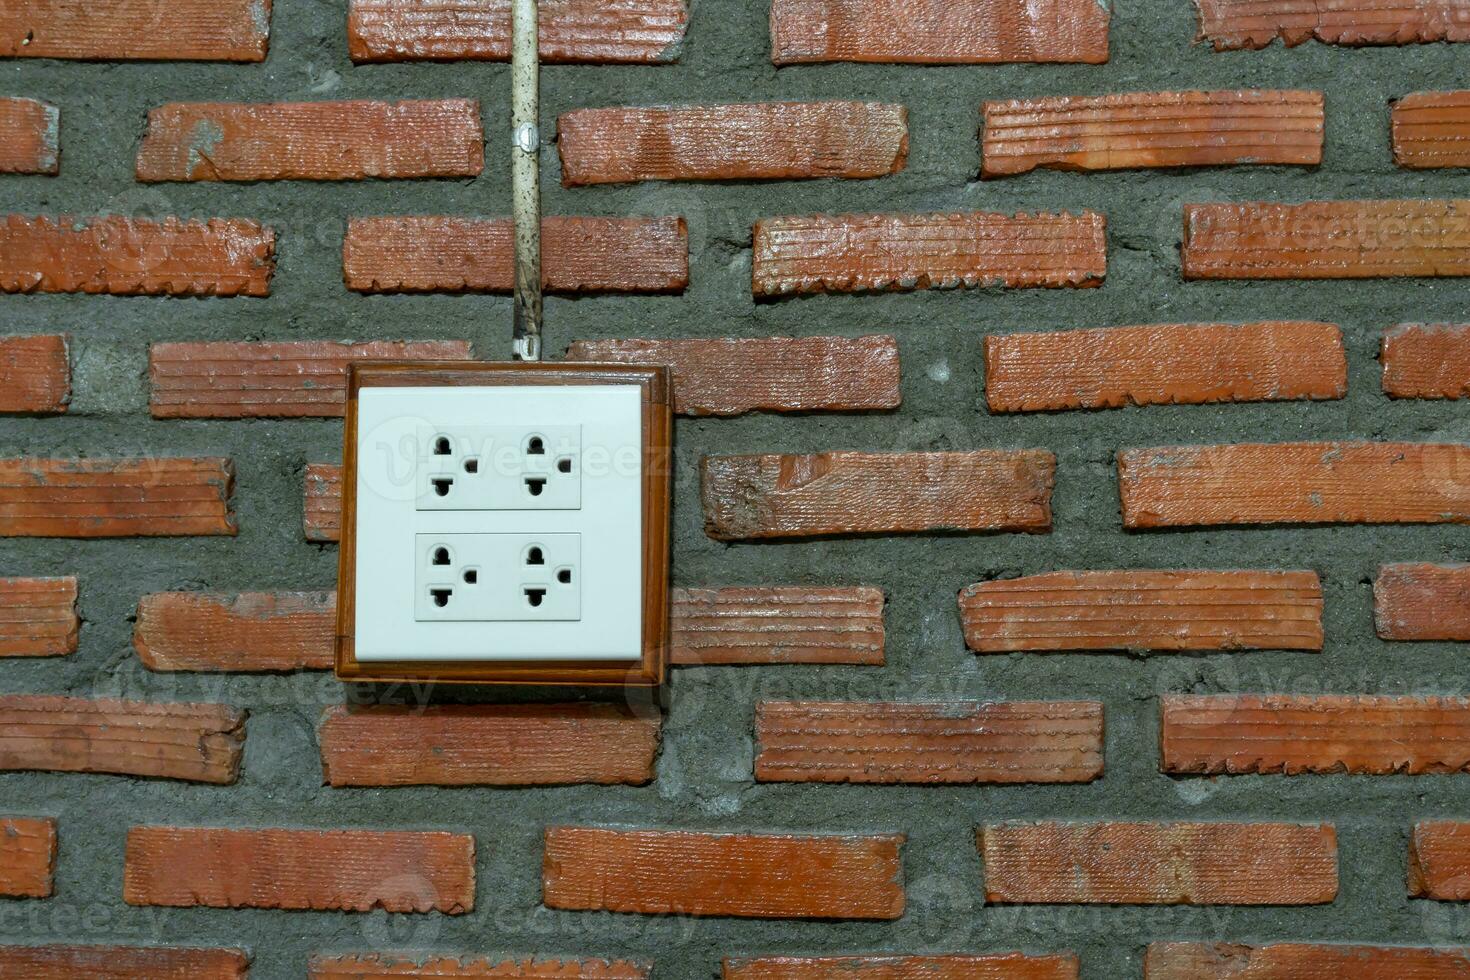 vit uttag installerad på orange tegel vägg i hotell eller tillflykt rum. foto